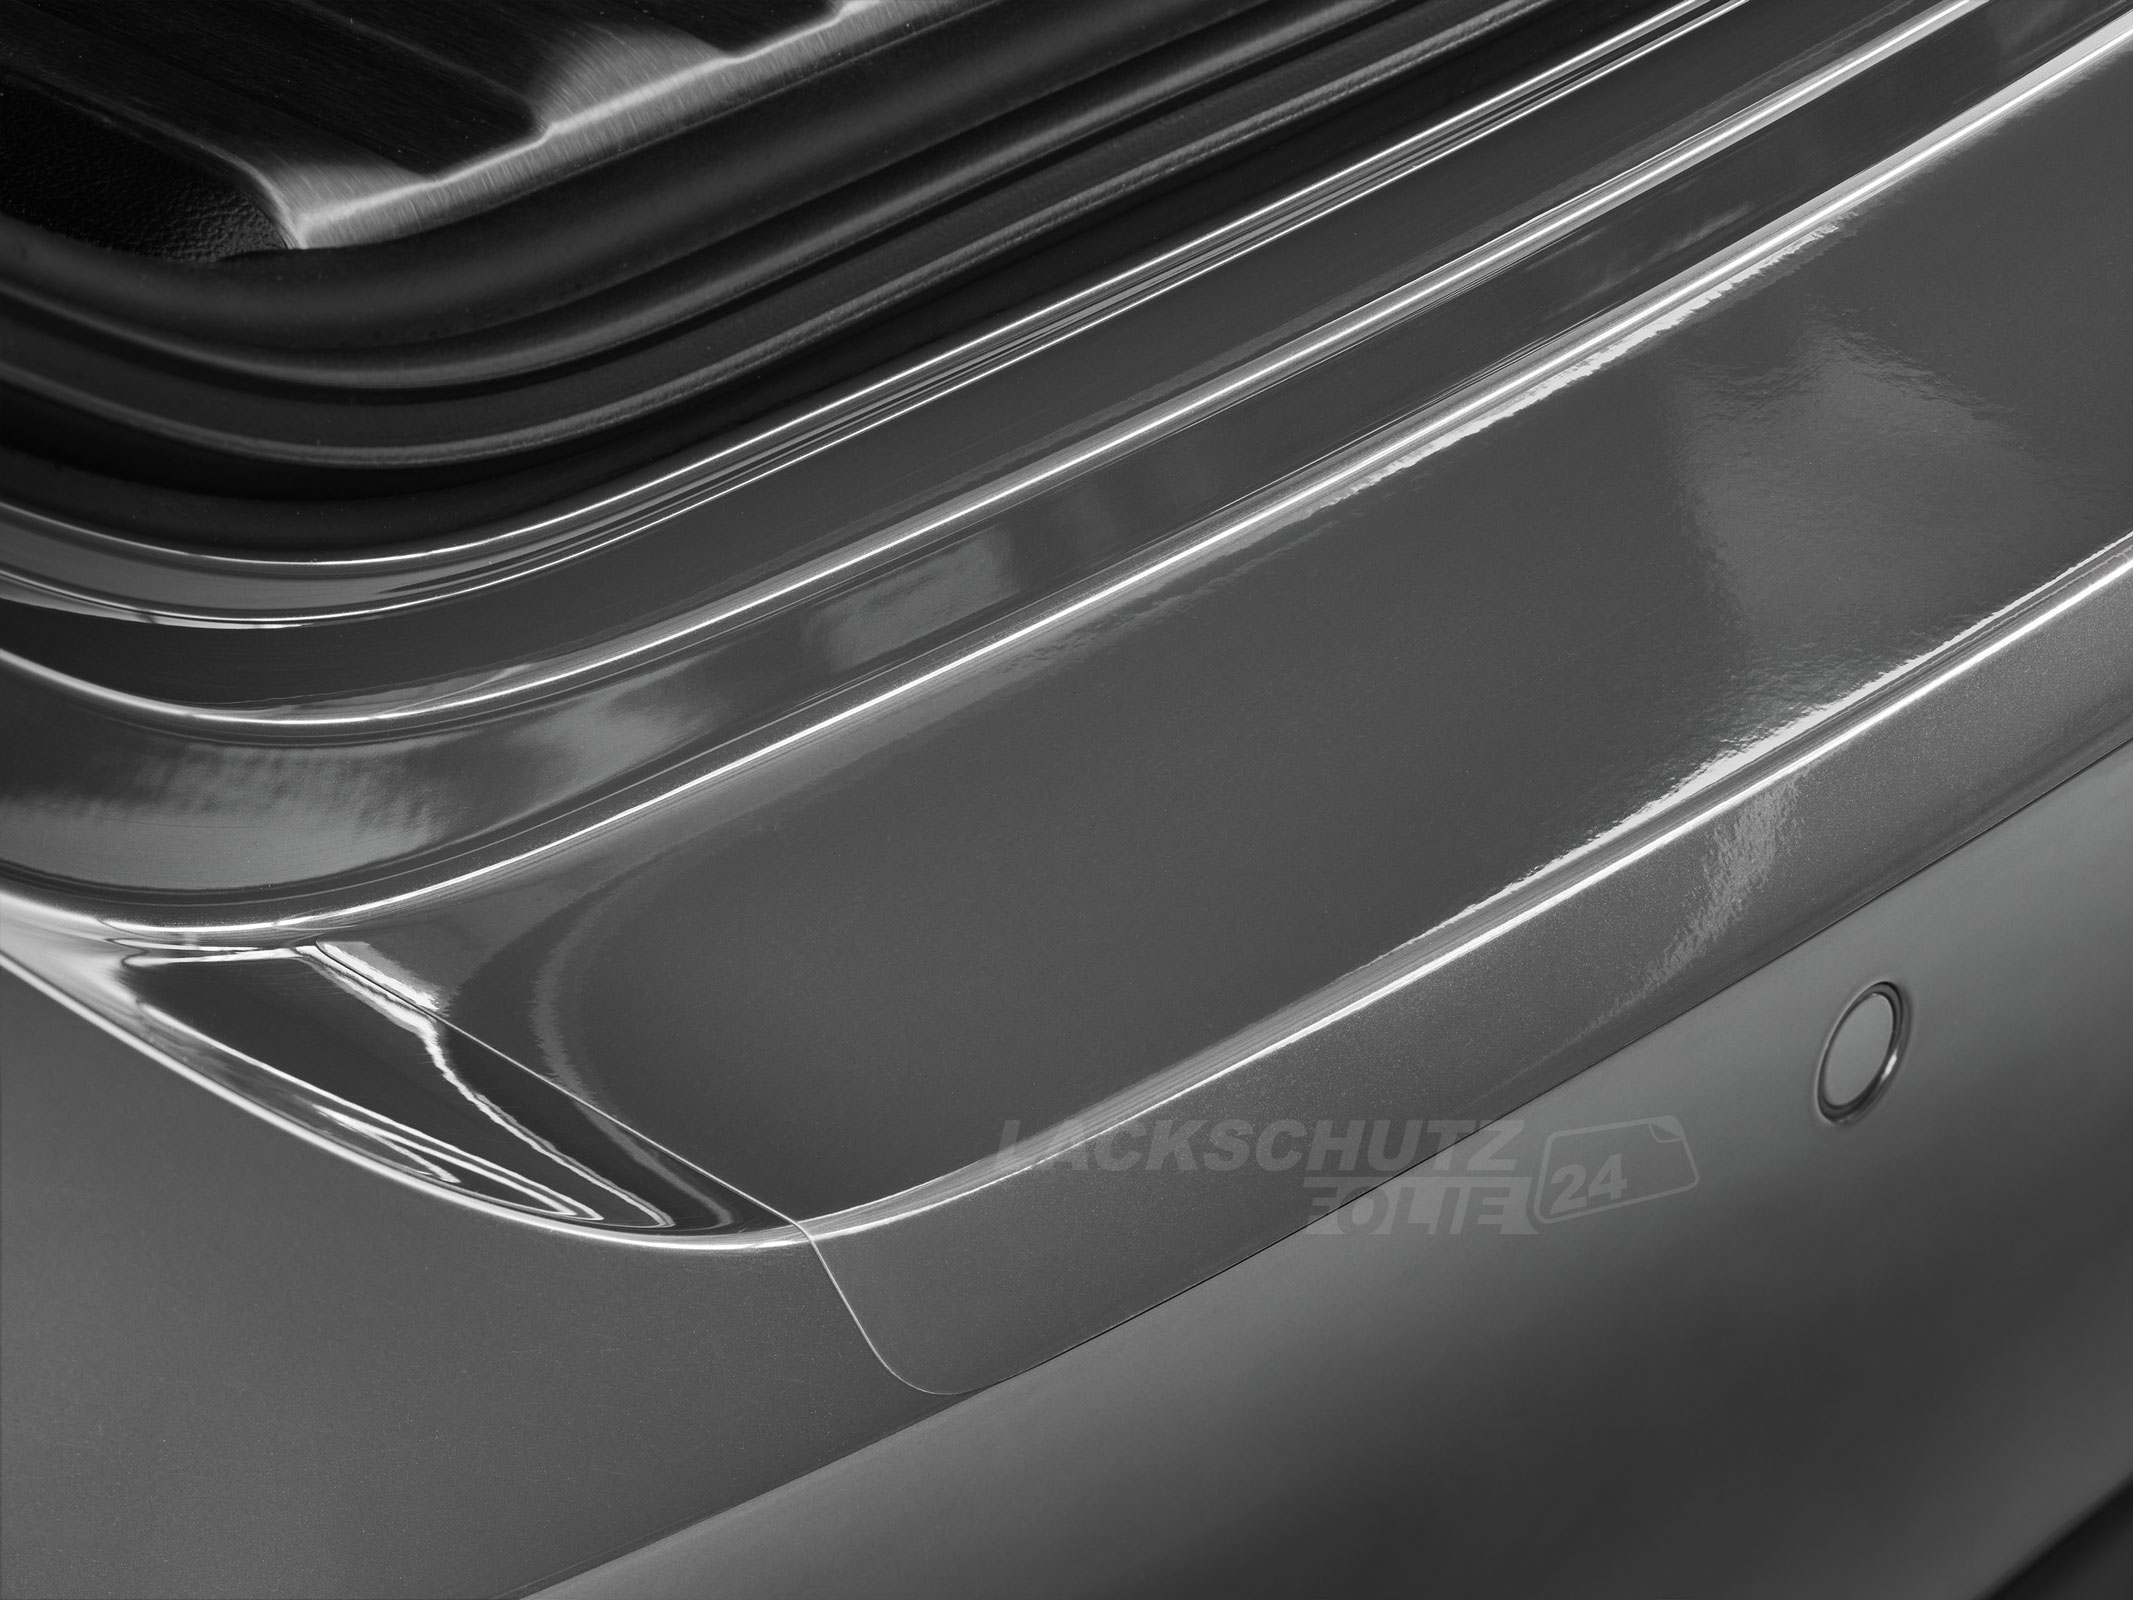 Ladekantenschutzfolie - Transparent Glatt Hochglänzend für Opel Astra Sports Tourer (Kombi) Typ J, Facelift, BJ 09/2012-2015